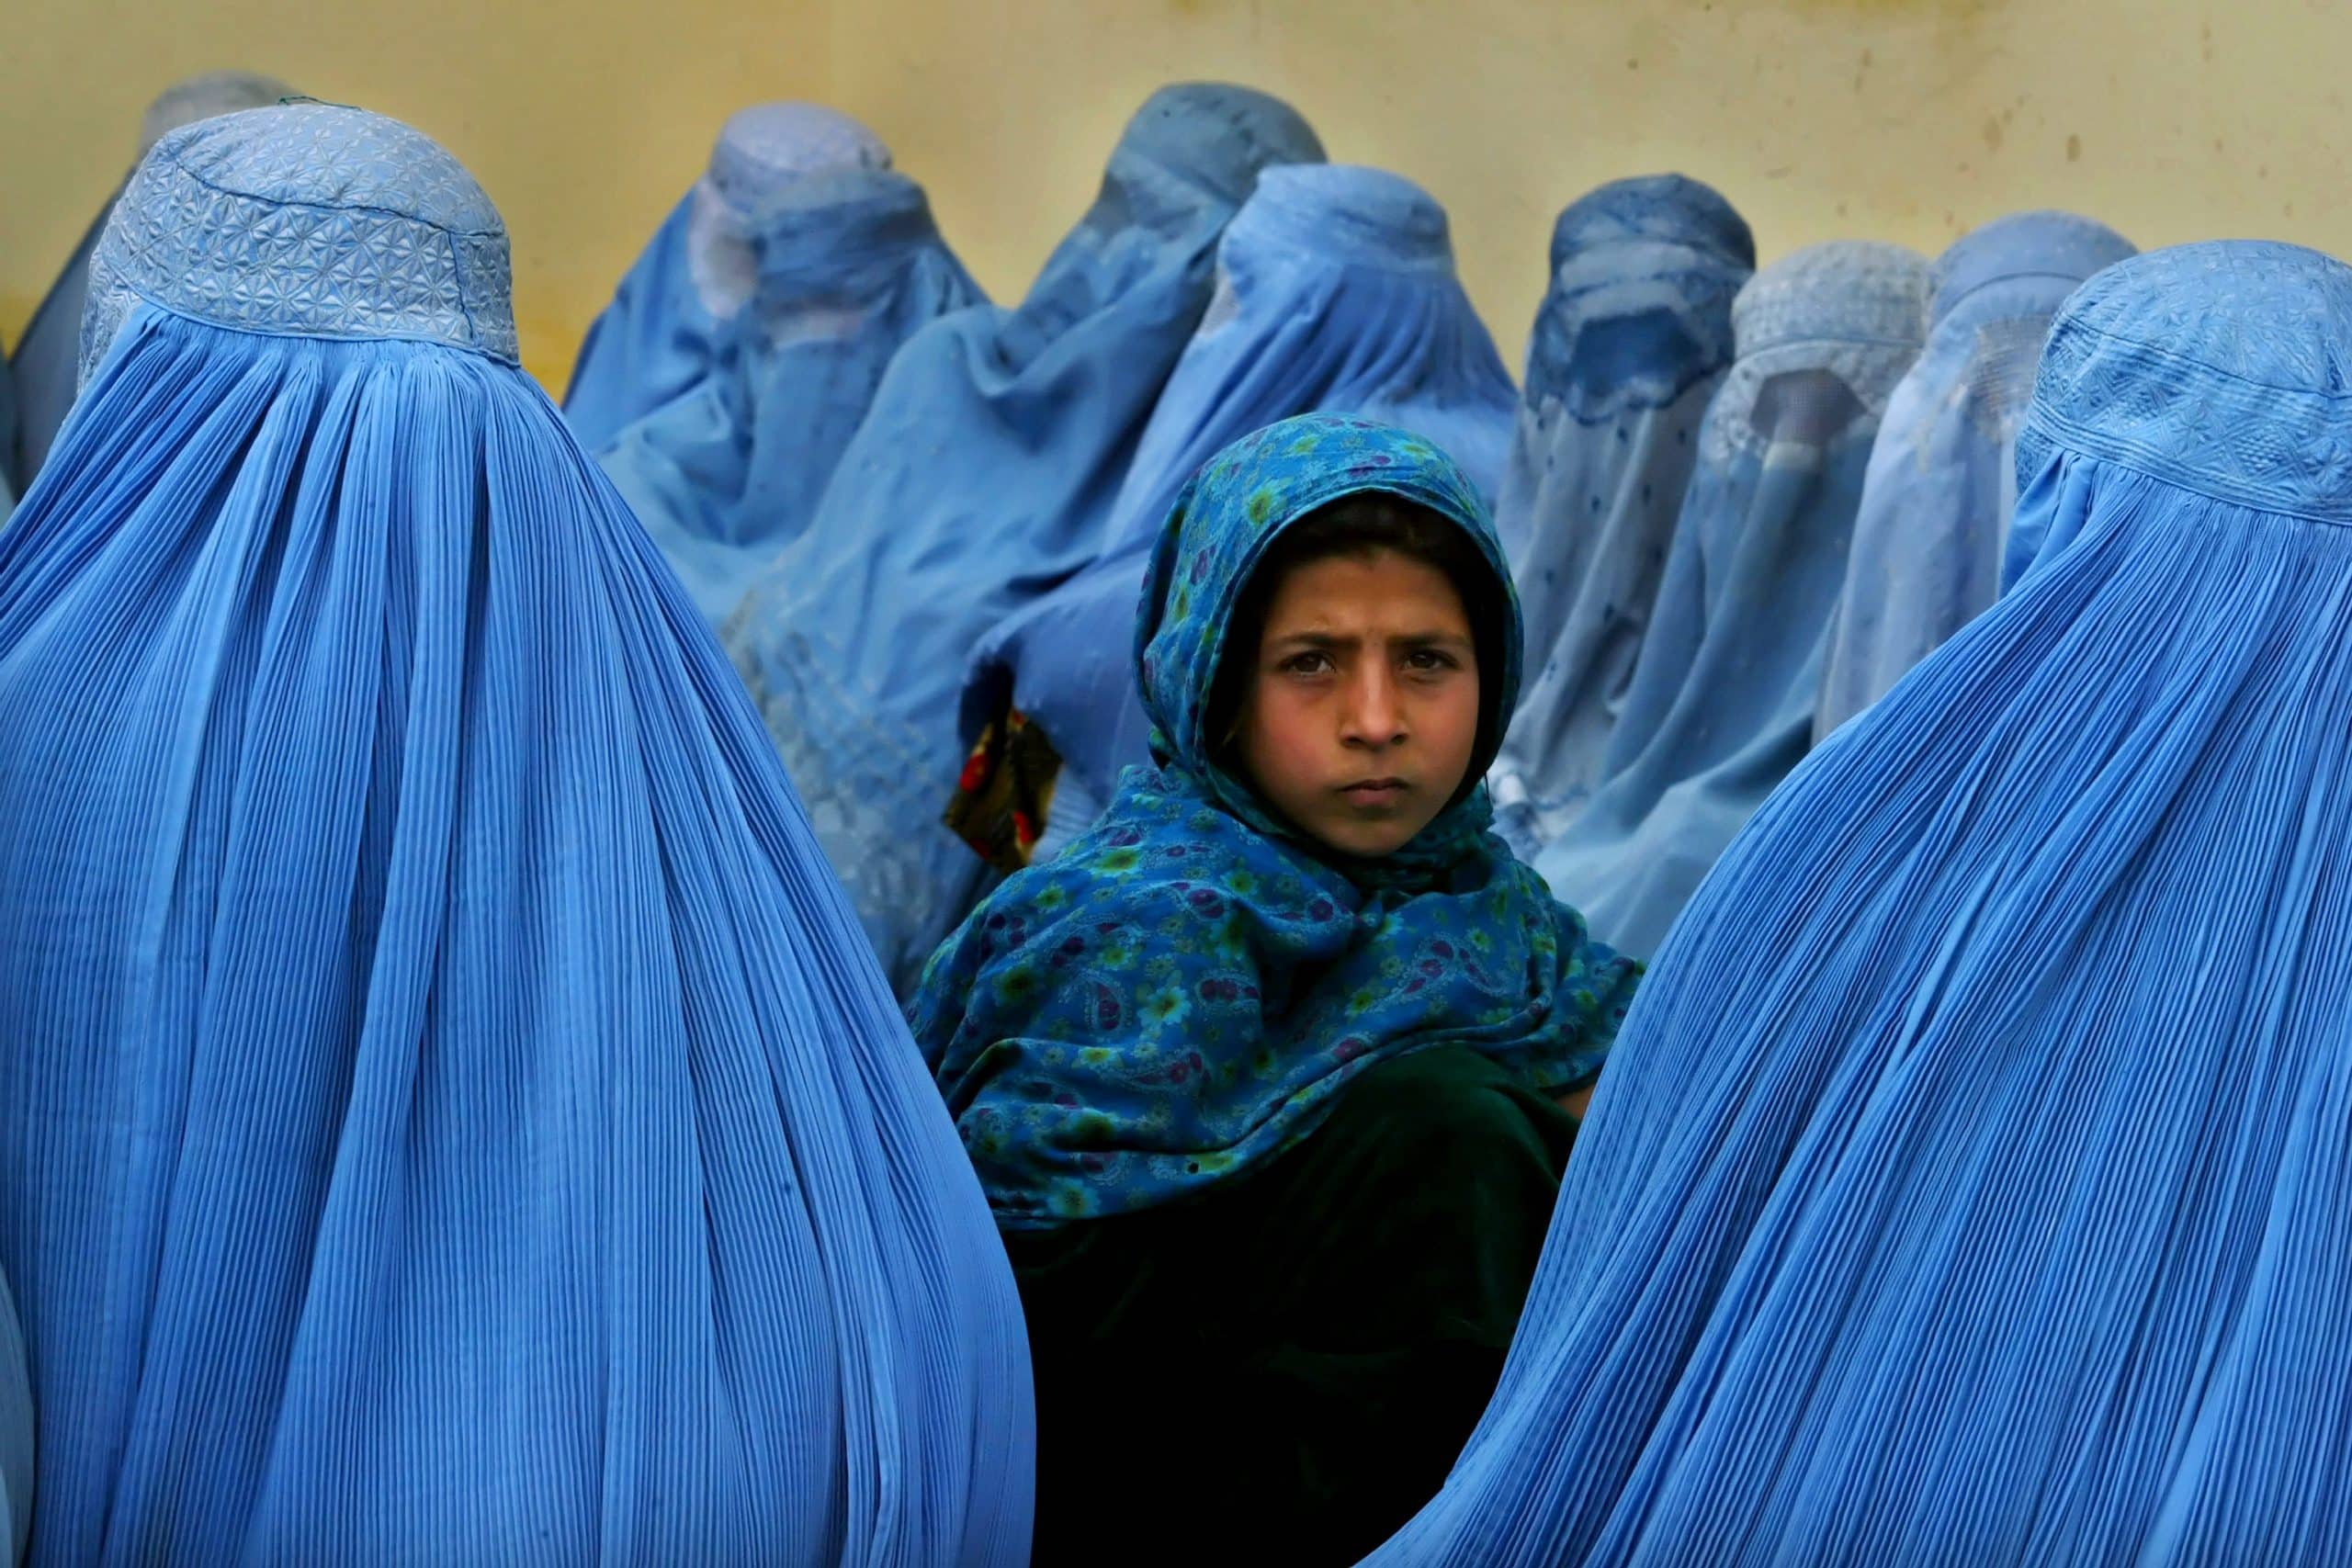 Paula Bronstein Las ventajas de ser mujer fotoperiodista en Afganistán